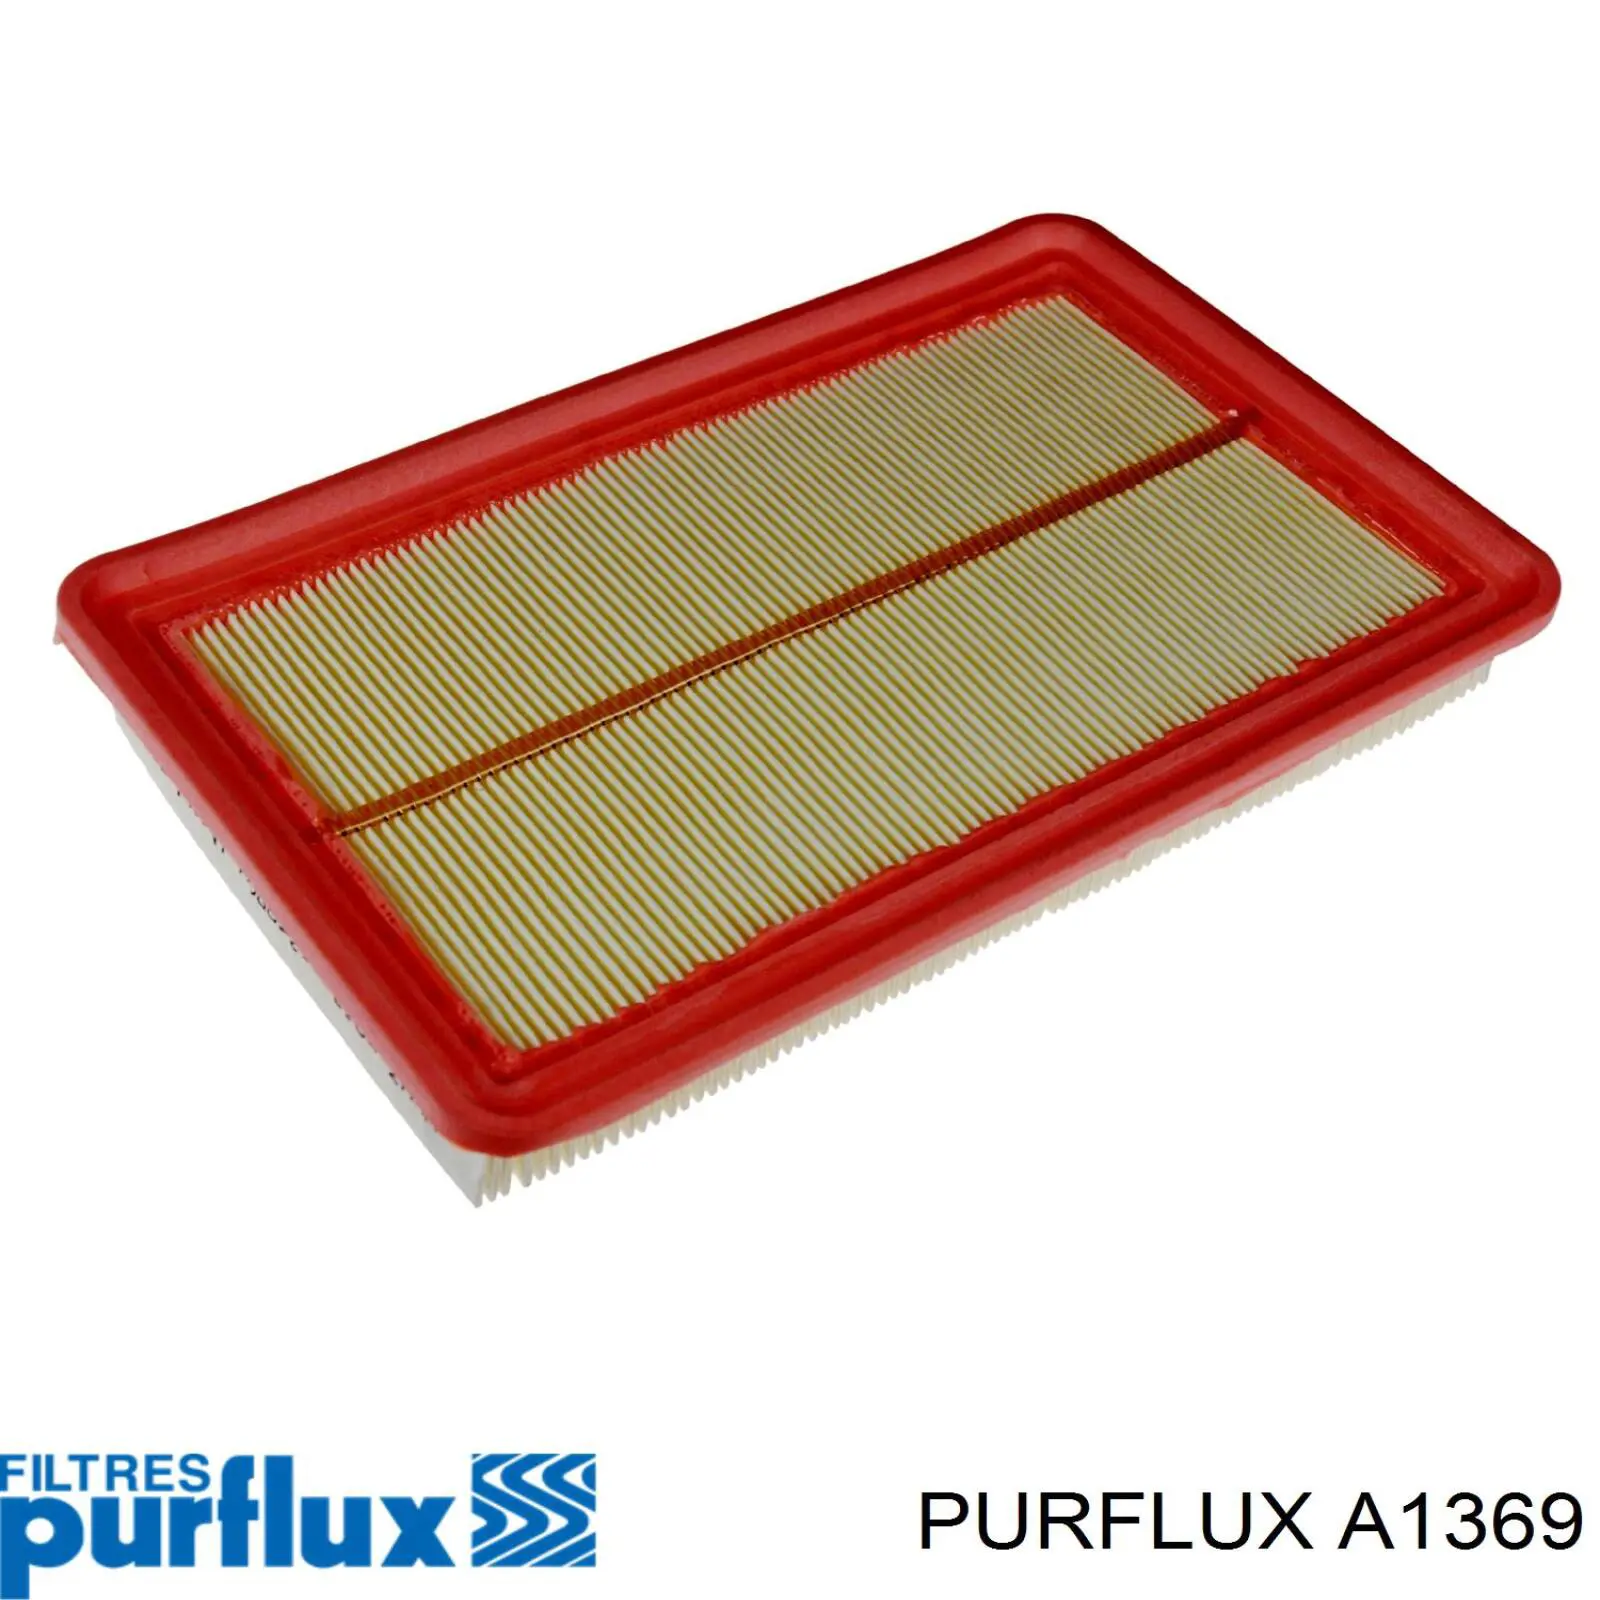 Filtro de aire A1369 Purflux